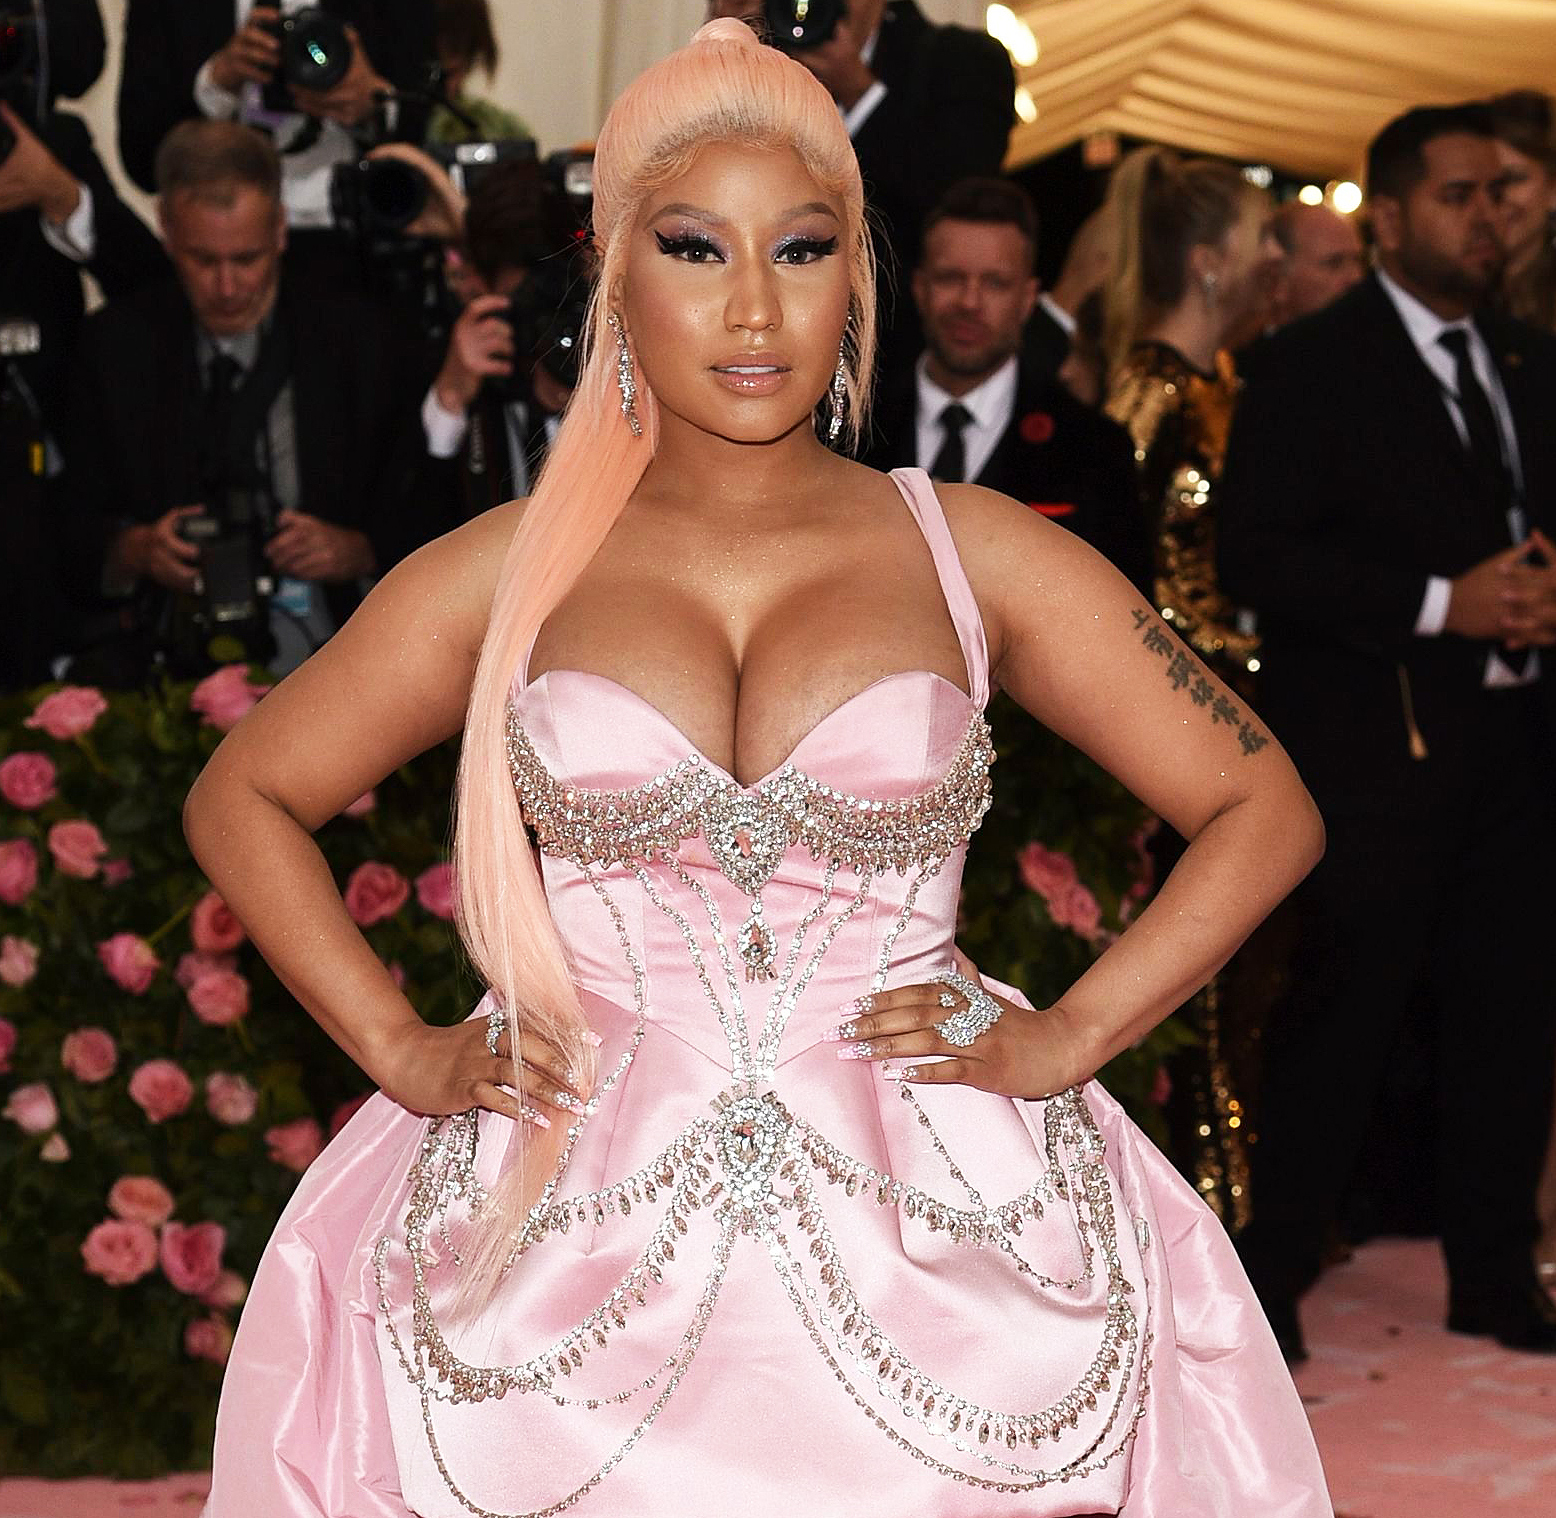 Nicki Minaj Fat Booty Porn - Nicki Minaj Talks 'Painful' Breast-Feeding, Pumping Experience